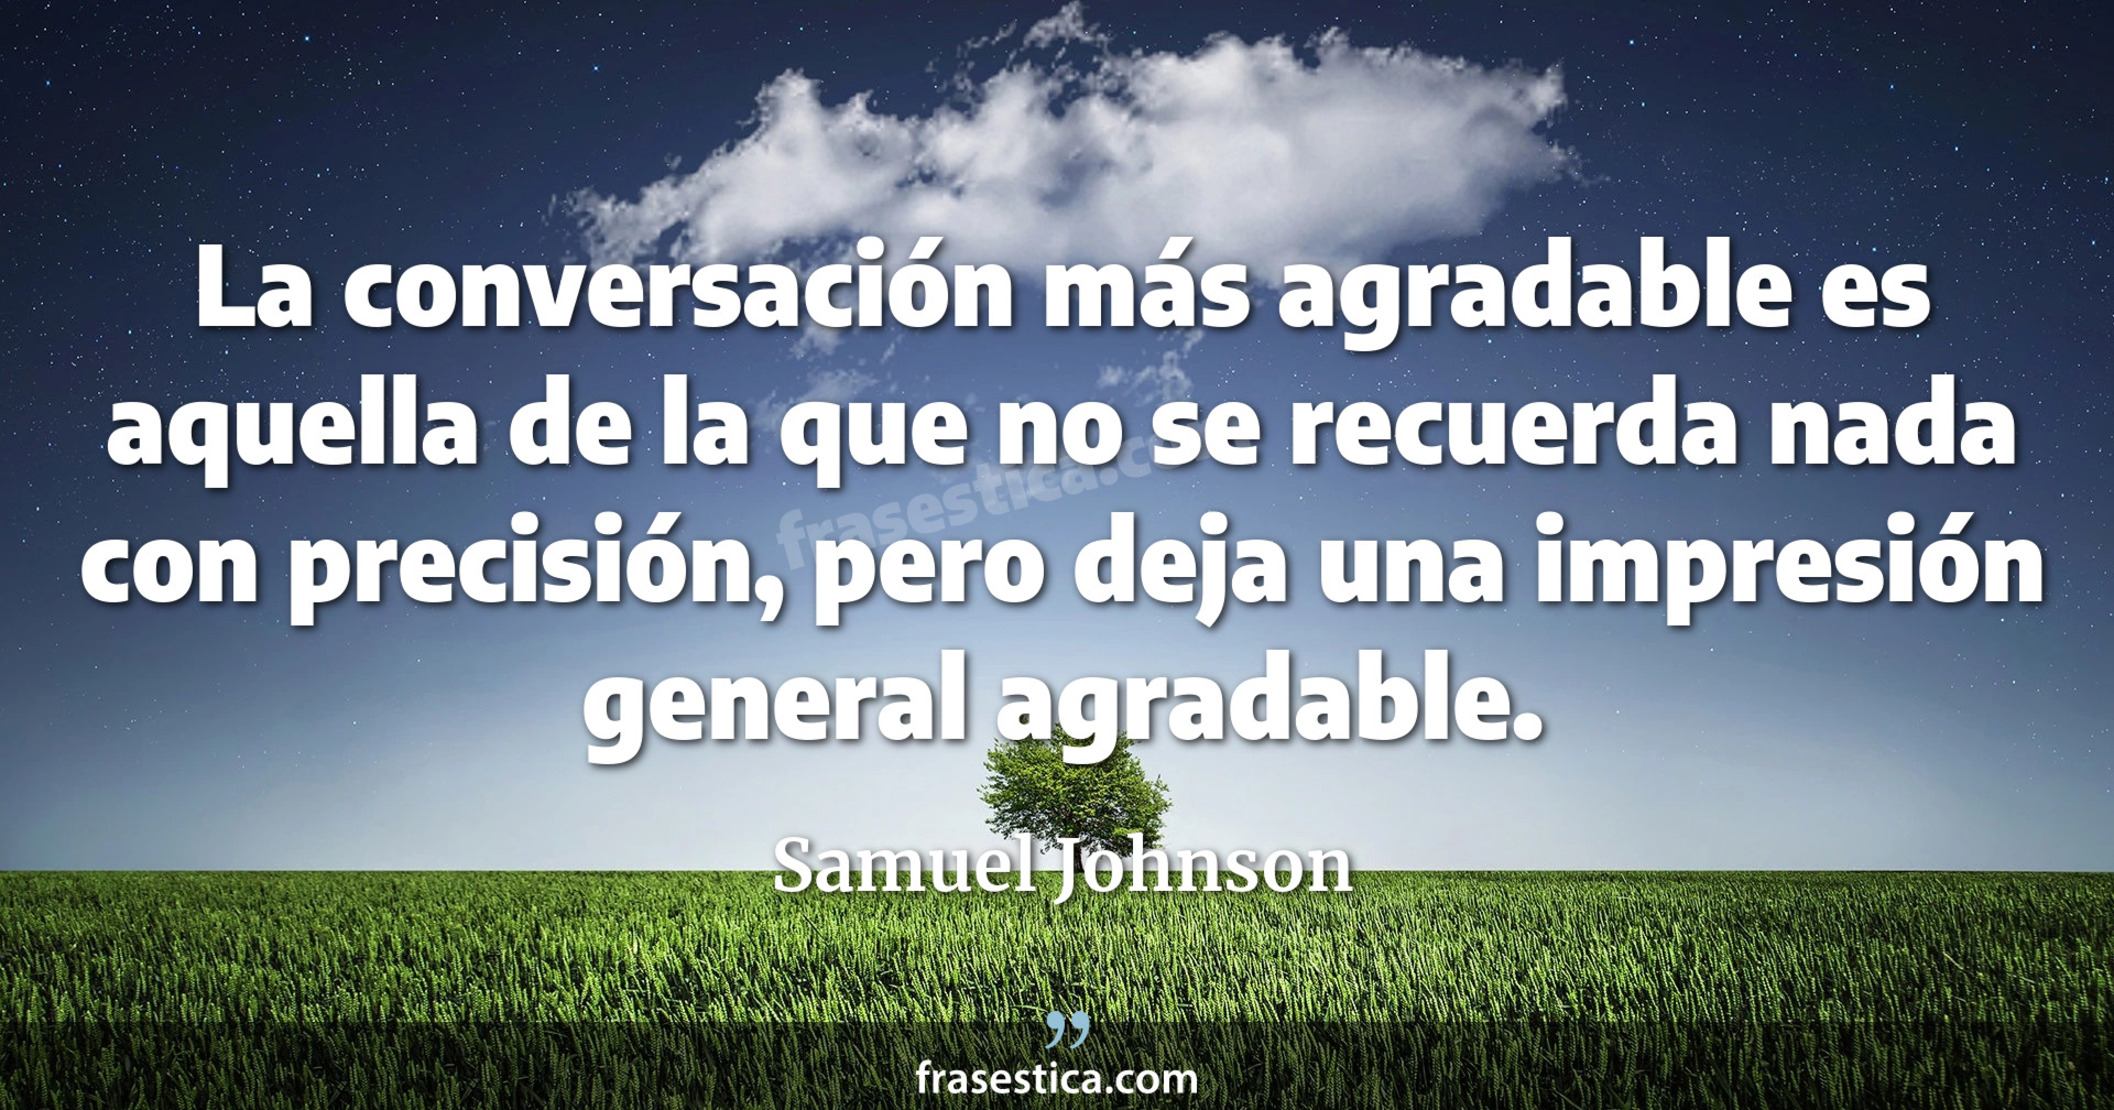 La conversación más agradable es aquella de la que no se recuerda nada con precisión, pero deja una impresión general agradable. - Samuel Johnson